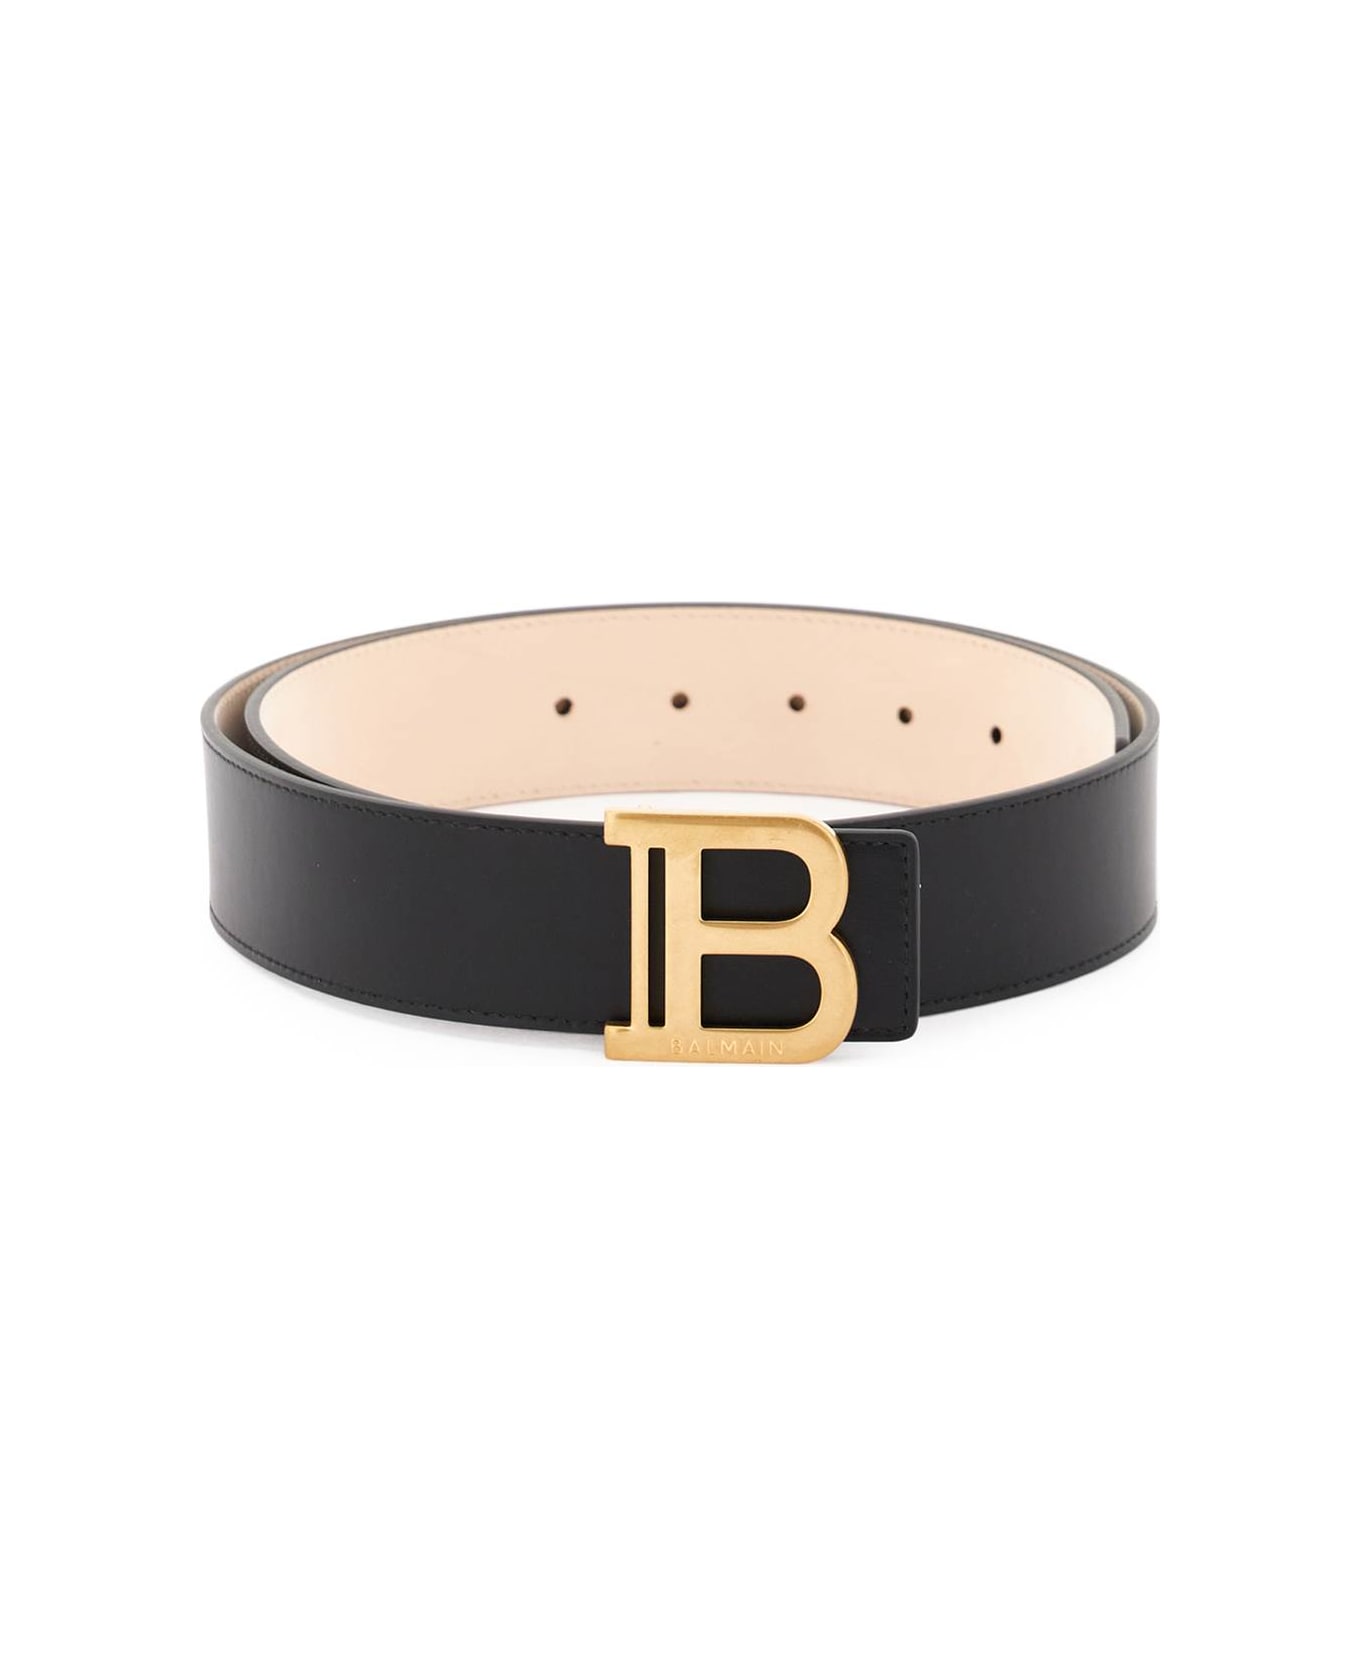 Balmain B-belt Belt - NOIR (Black)